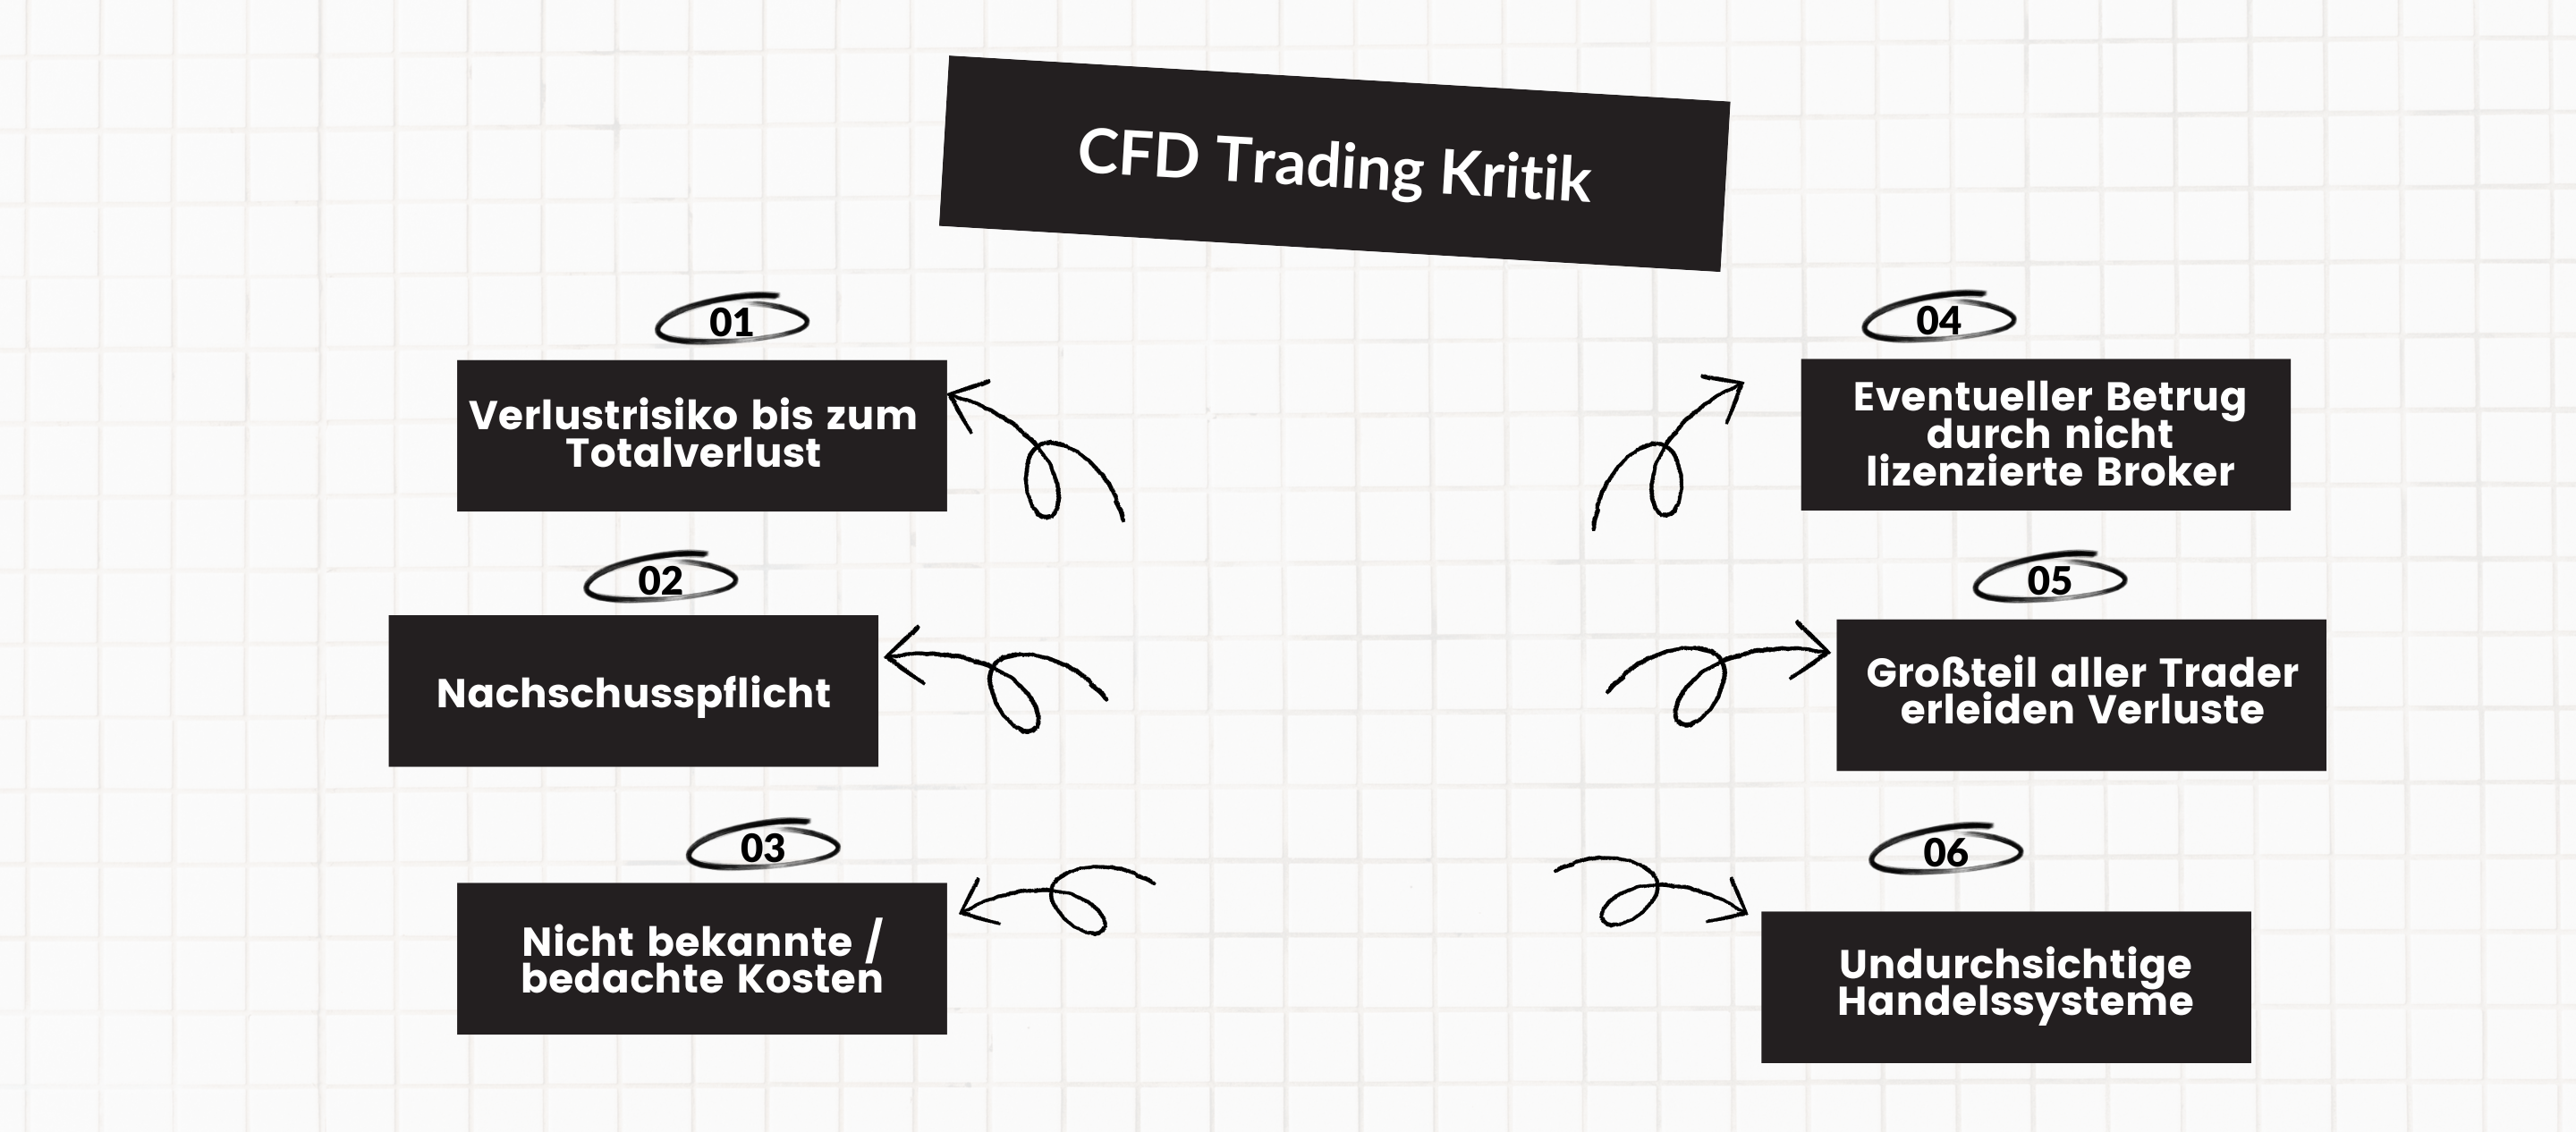 CFD Trading Kritik